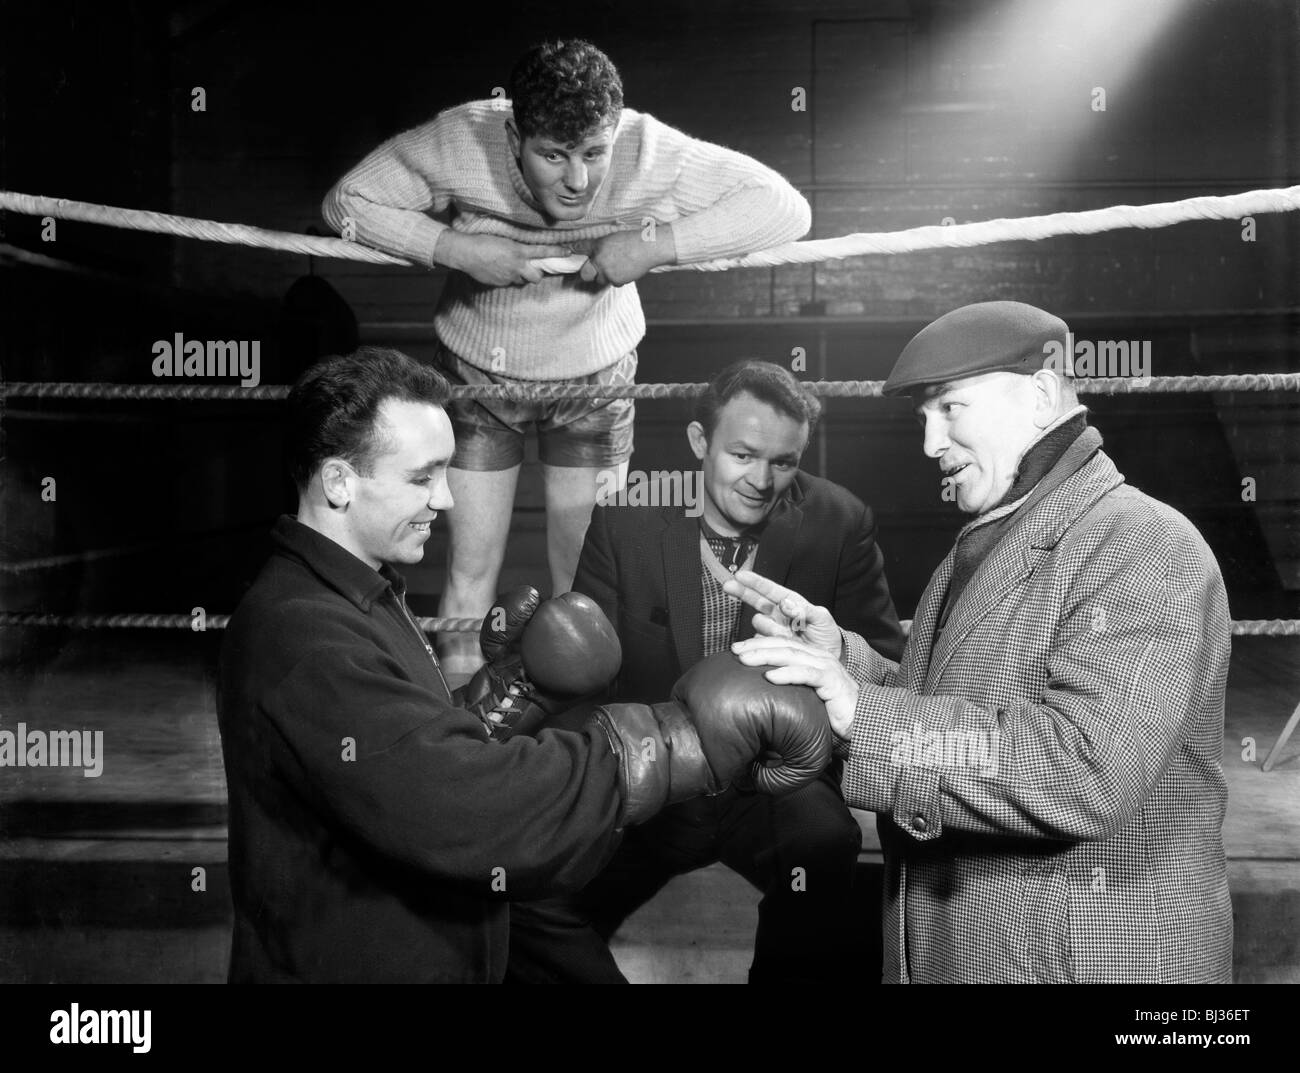 Un mineur de Sunderland obtient quelques conseils de boxe Ringside, Newcastle, 1964. Artiste : Michael Walters Banque D'Images